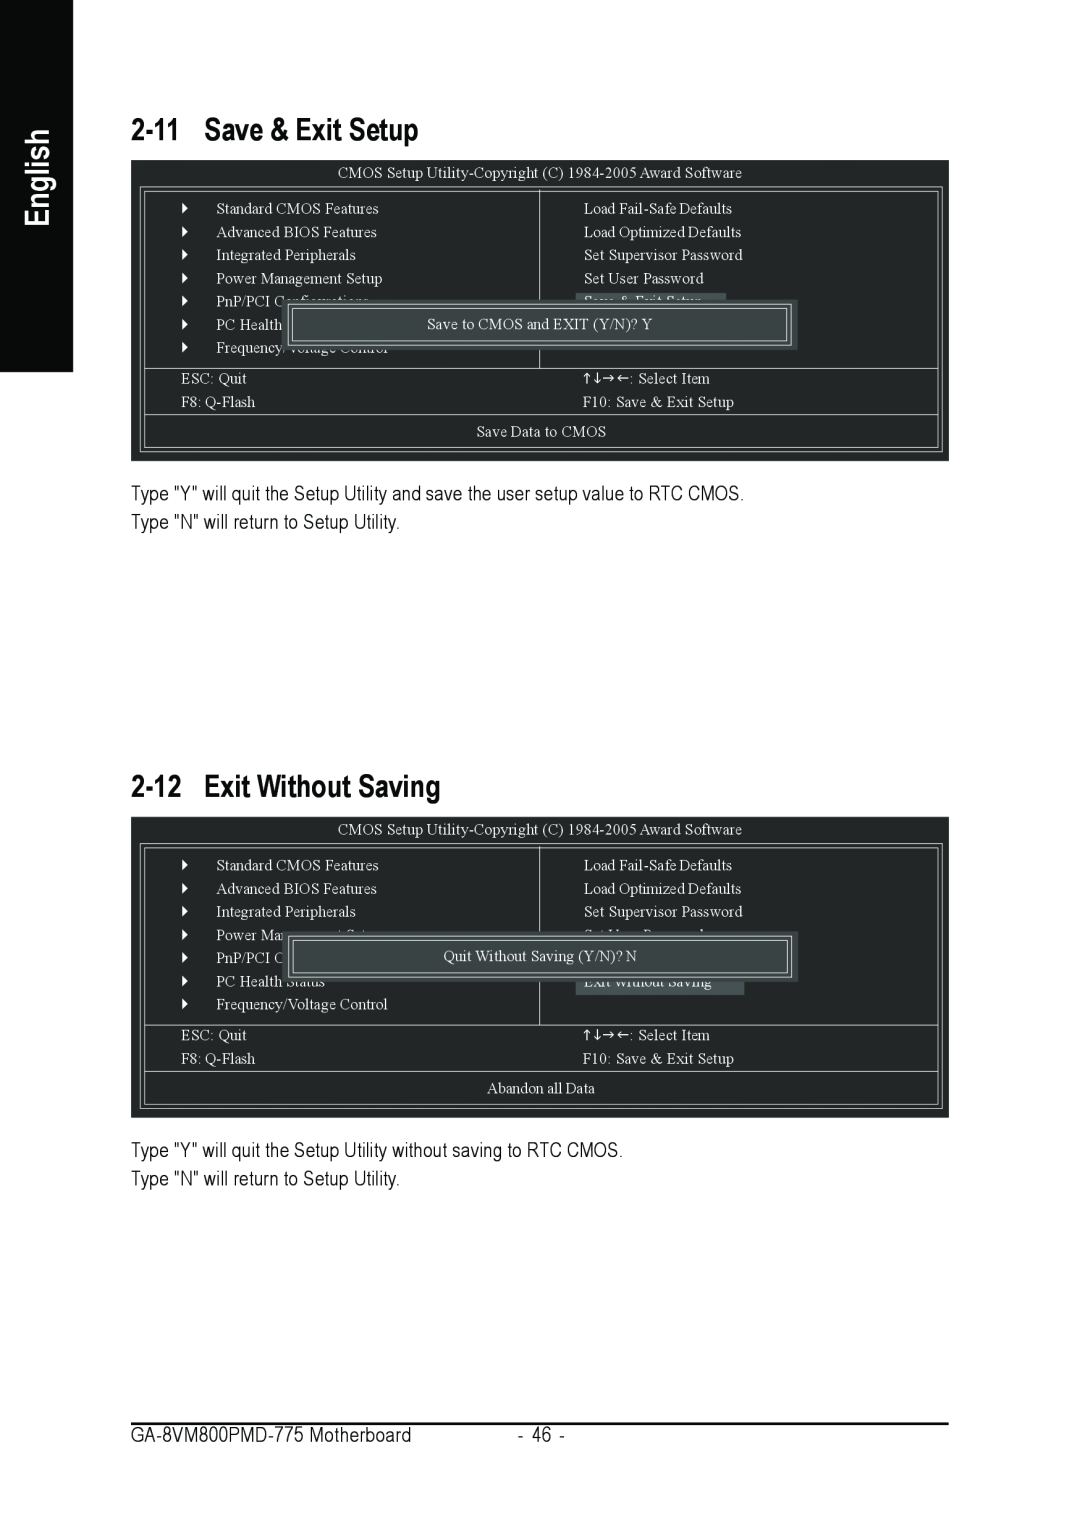 Intel GA-8VM800PMD-775 user manual Save & Exit Setup, Exit Without Saving, English 